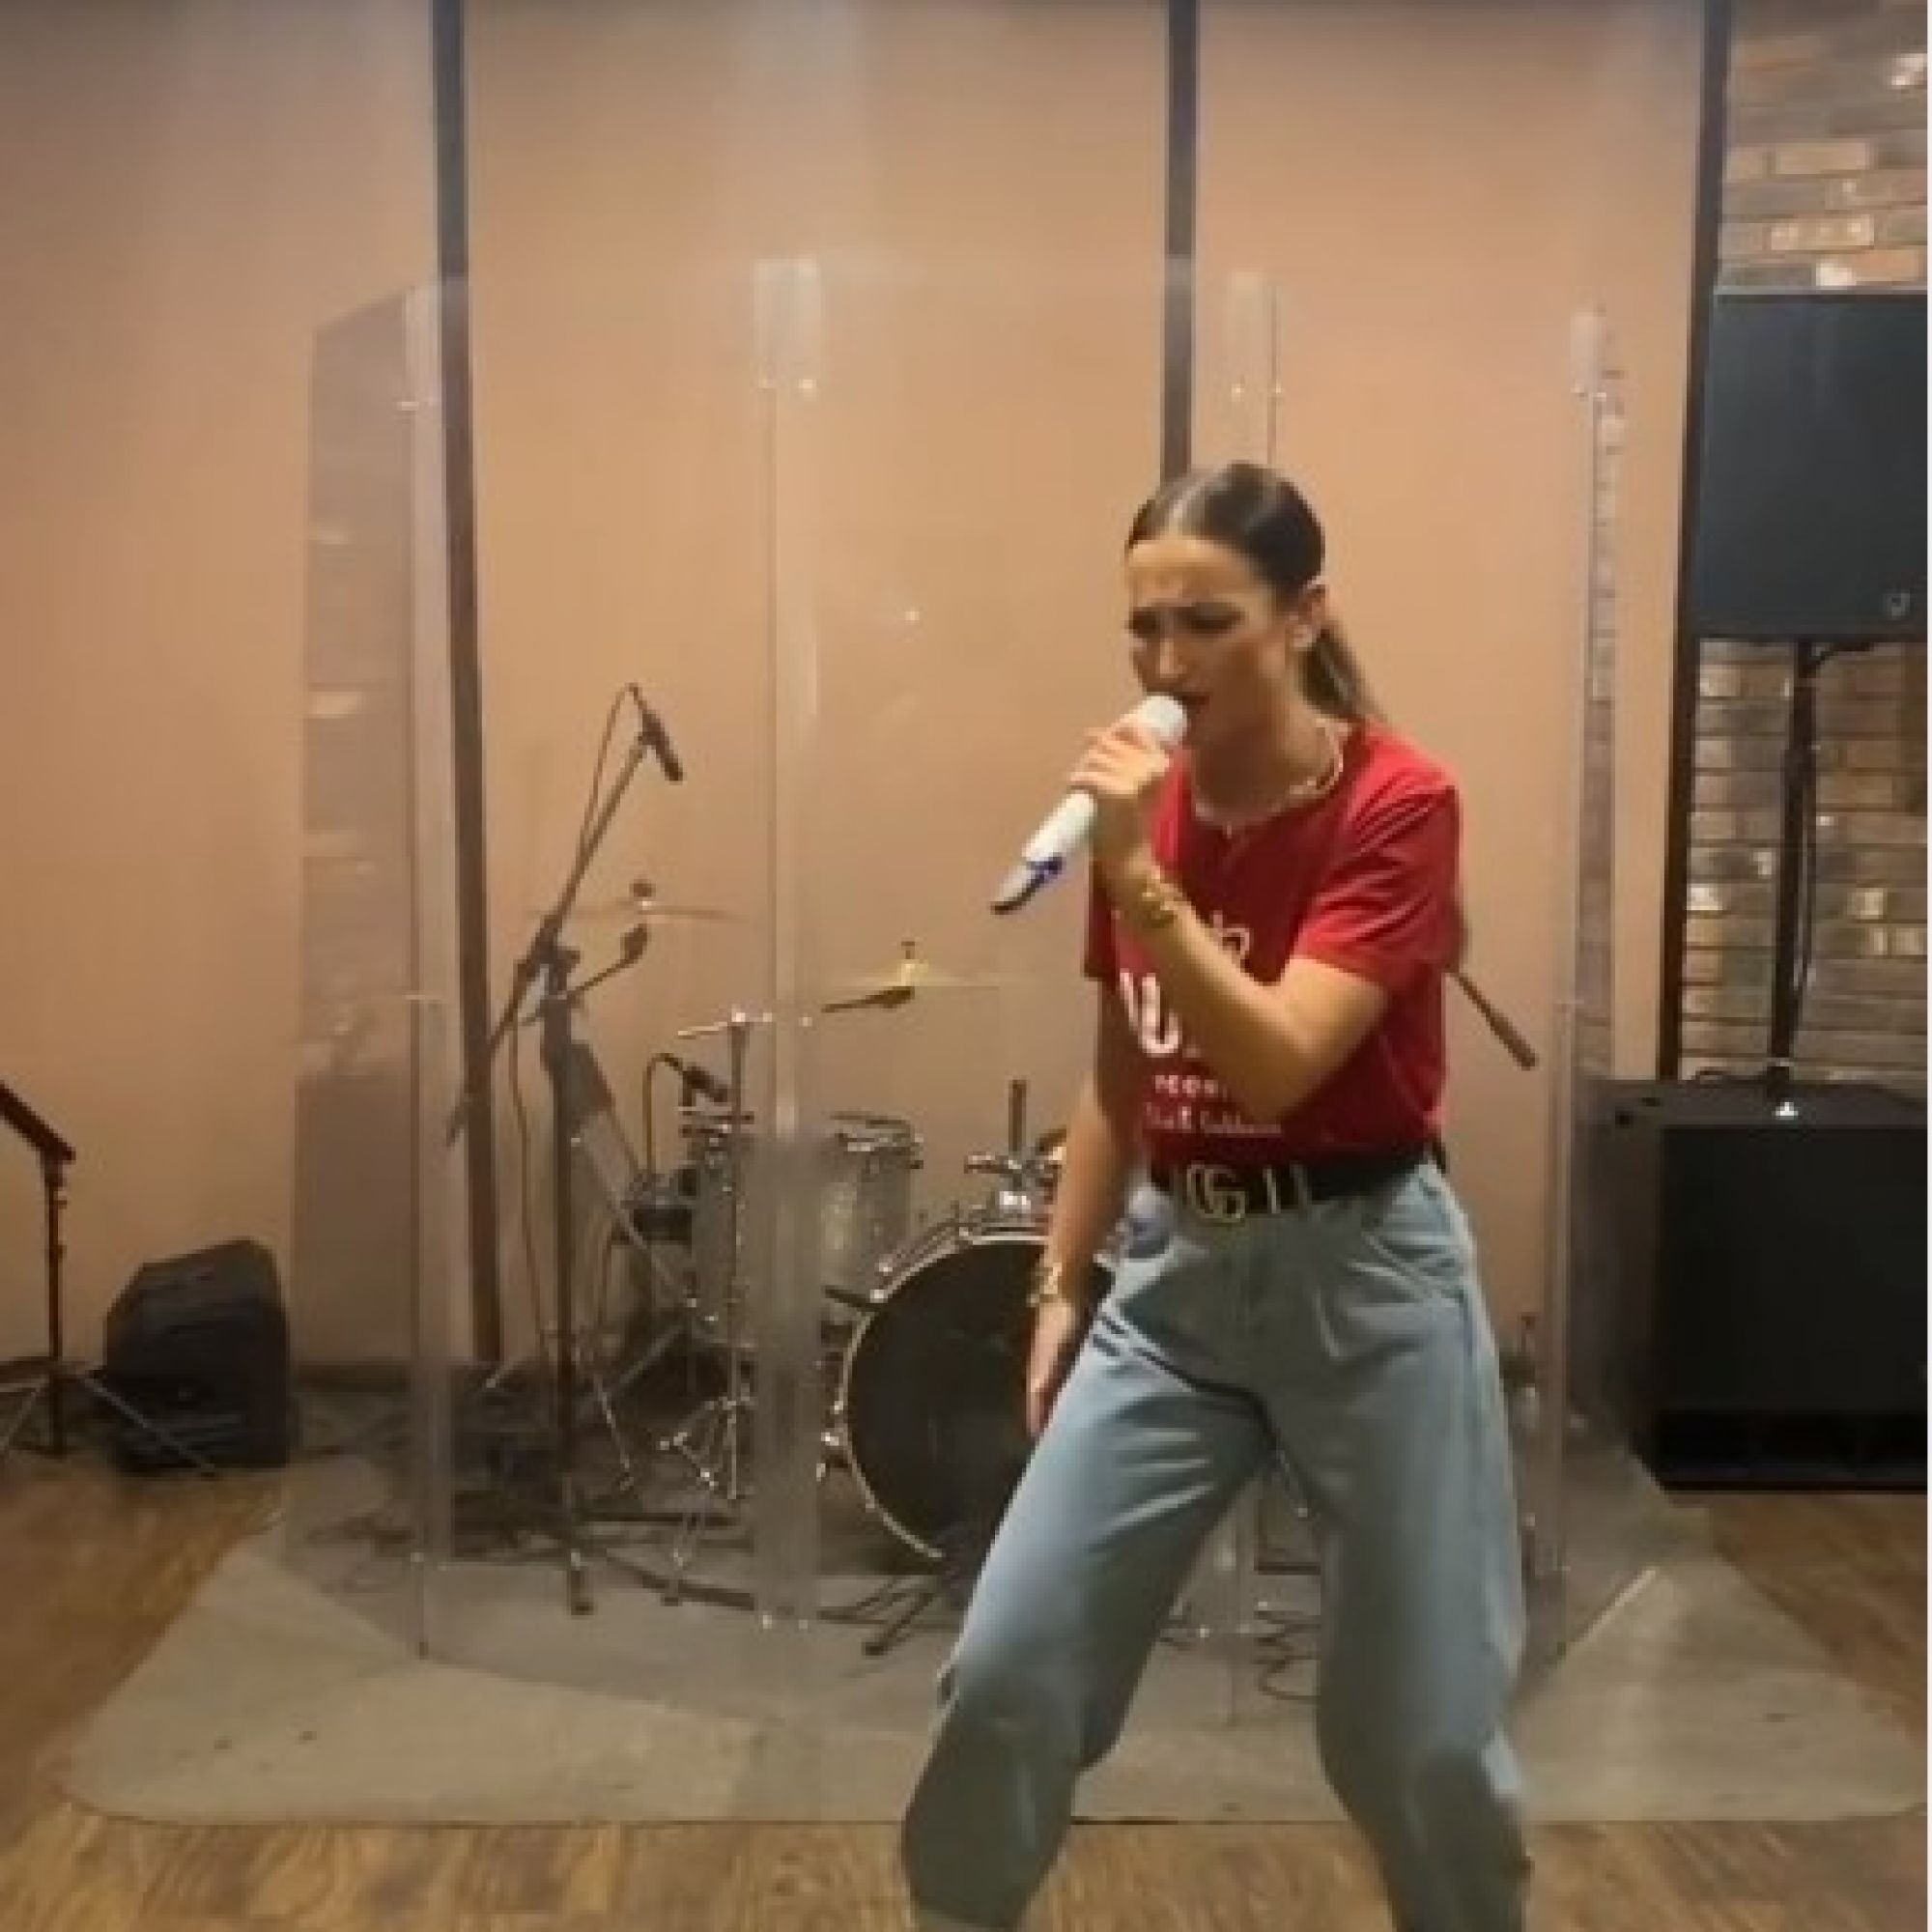 "Едем на Евровидение?": Ольга Бузова исполнила свой хит на английском языке